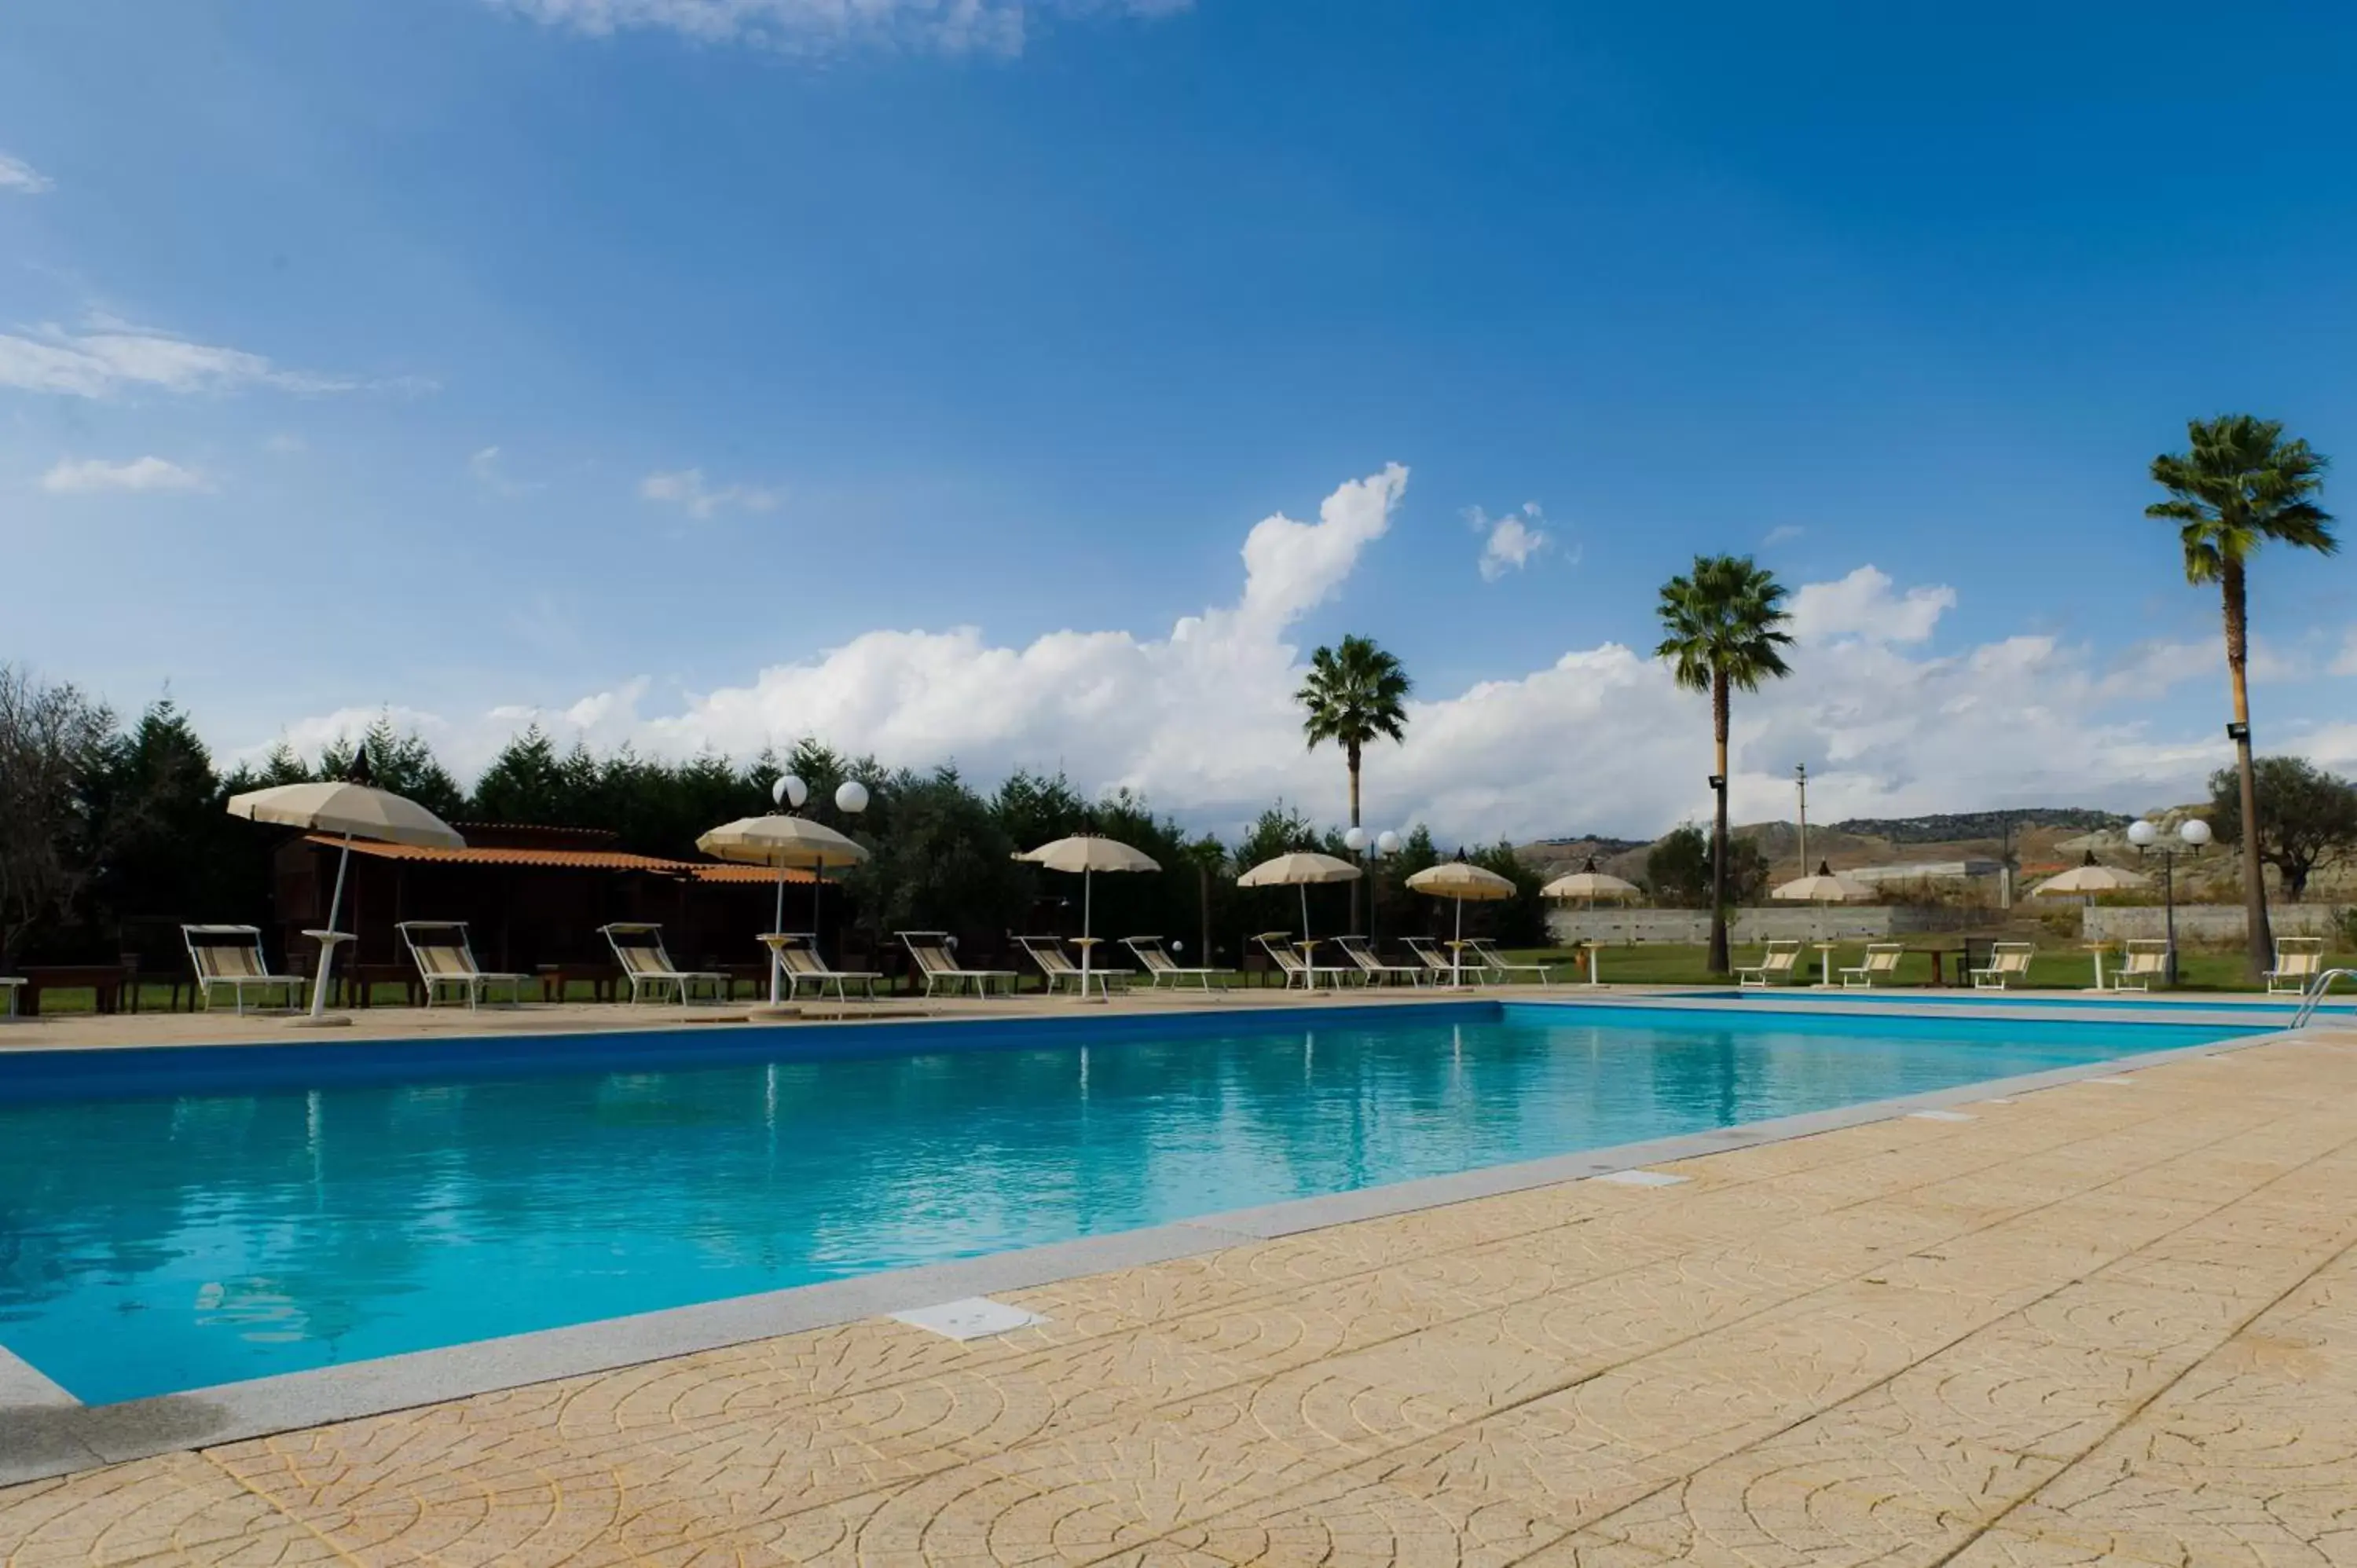 Day, Swimming Pool in Parco dei Principi Hotel